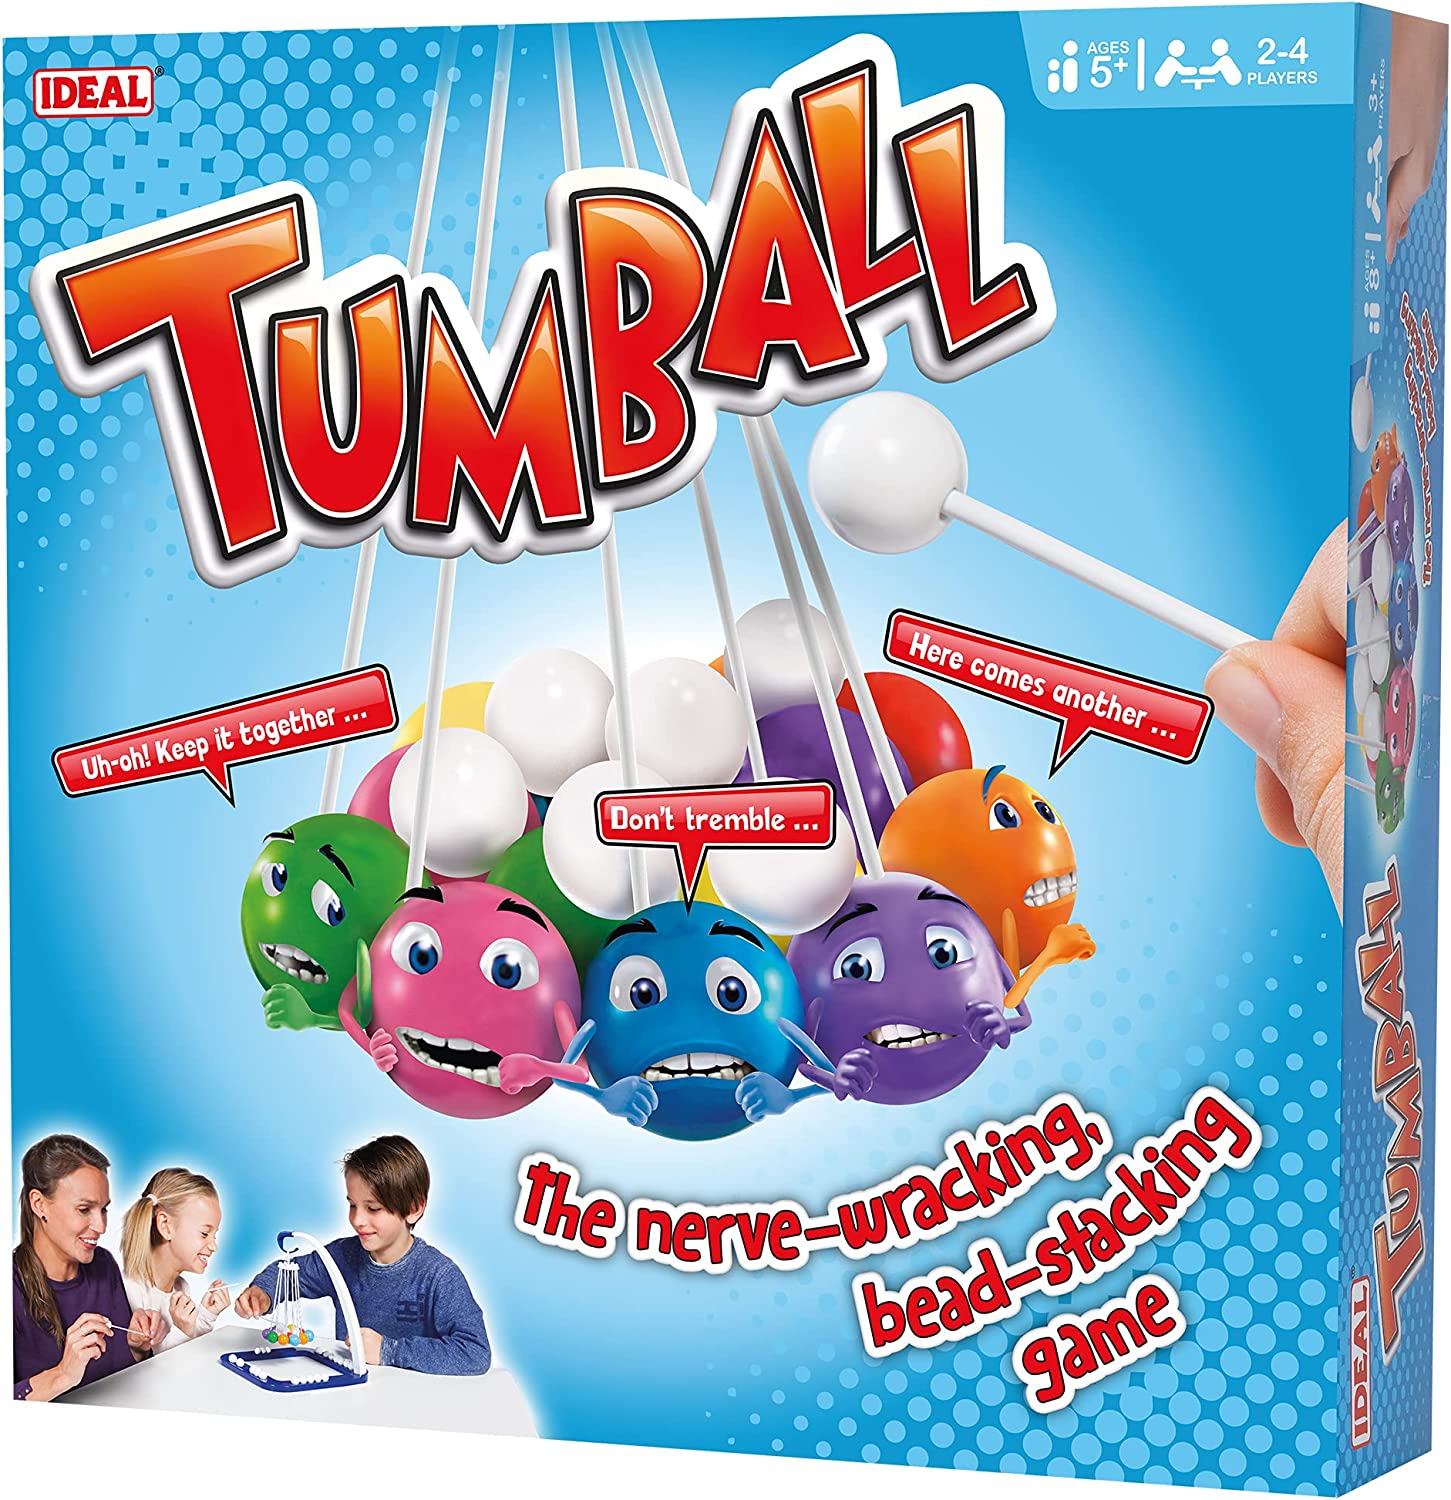 Tumball Game